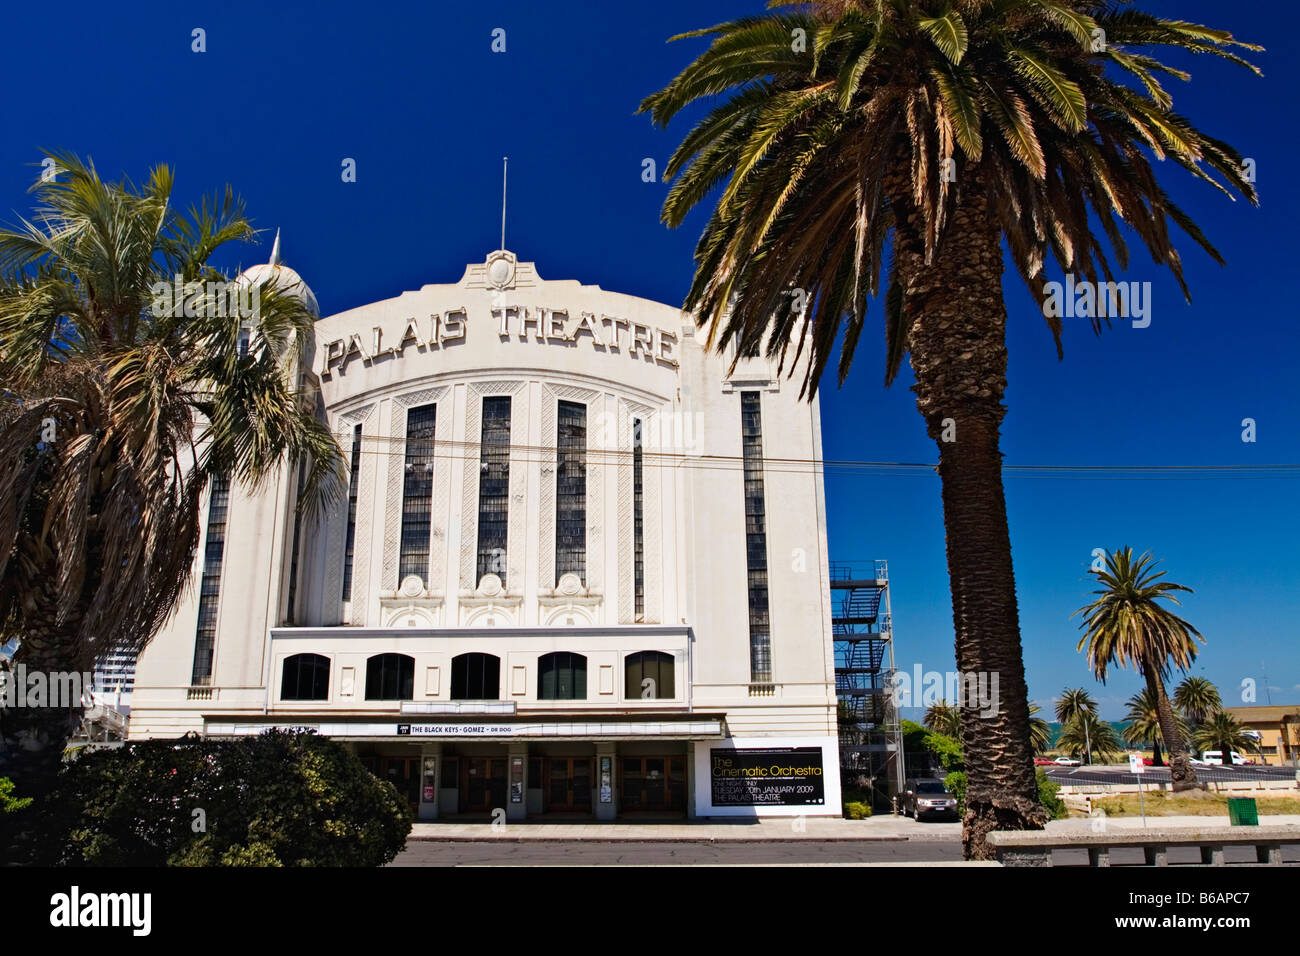 Melbourne Architecture / The Palais Theatre located in St.Kilda.Melbourne Victoria Australia. Stock Photo